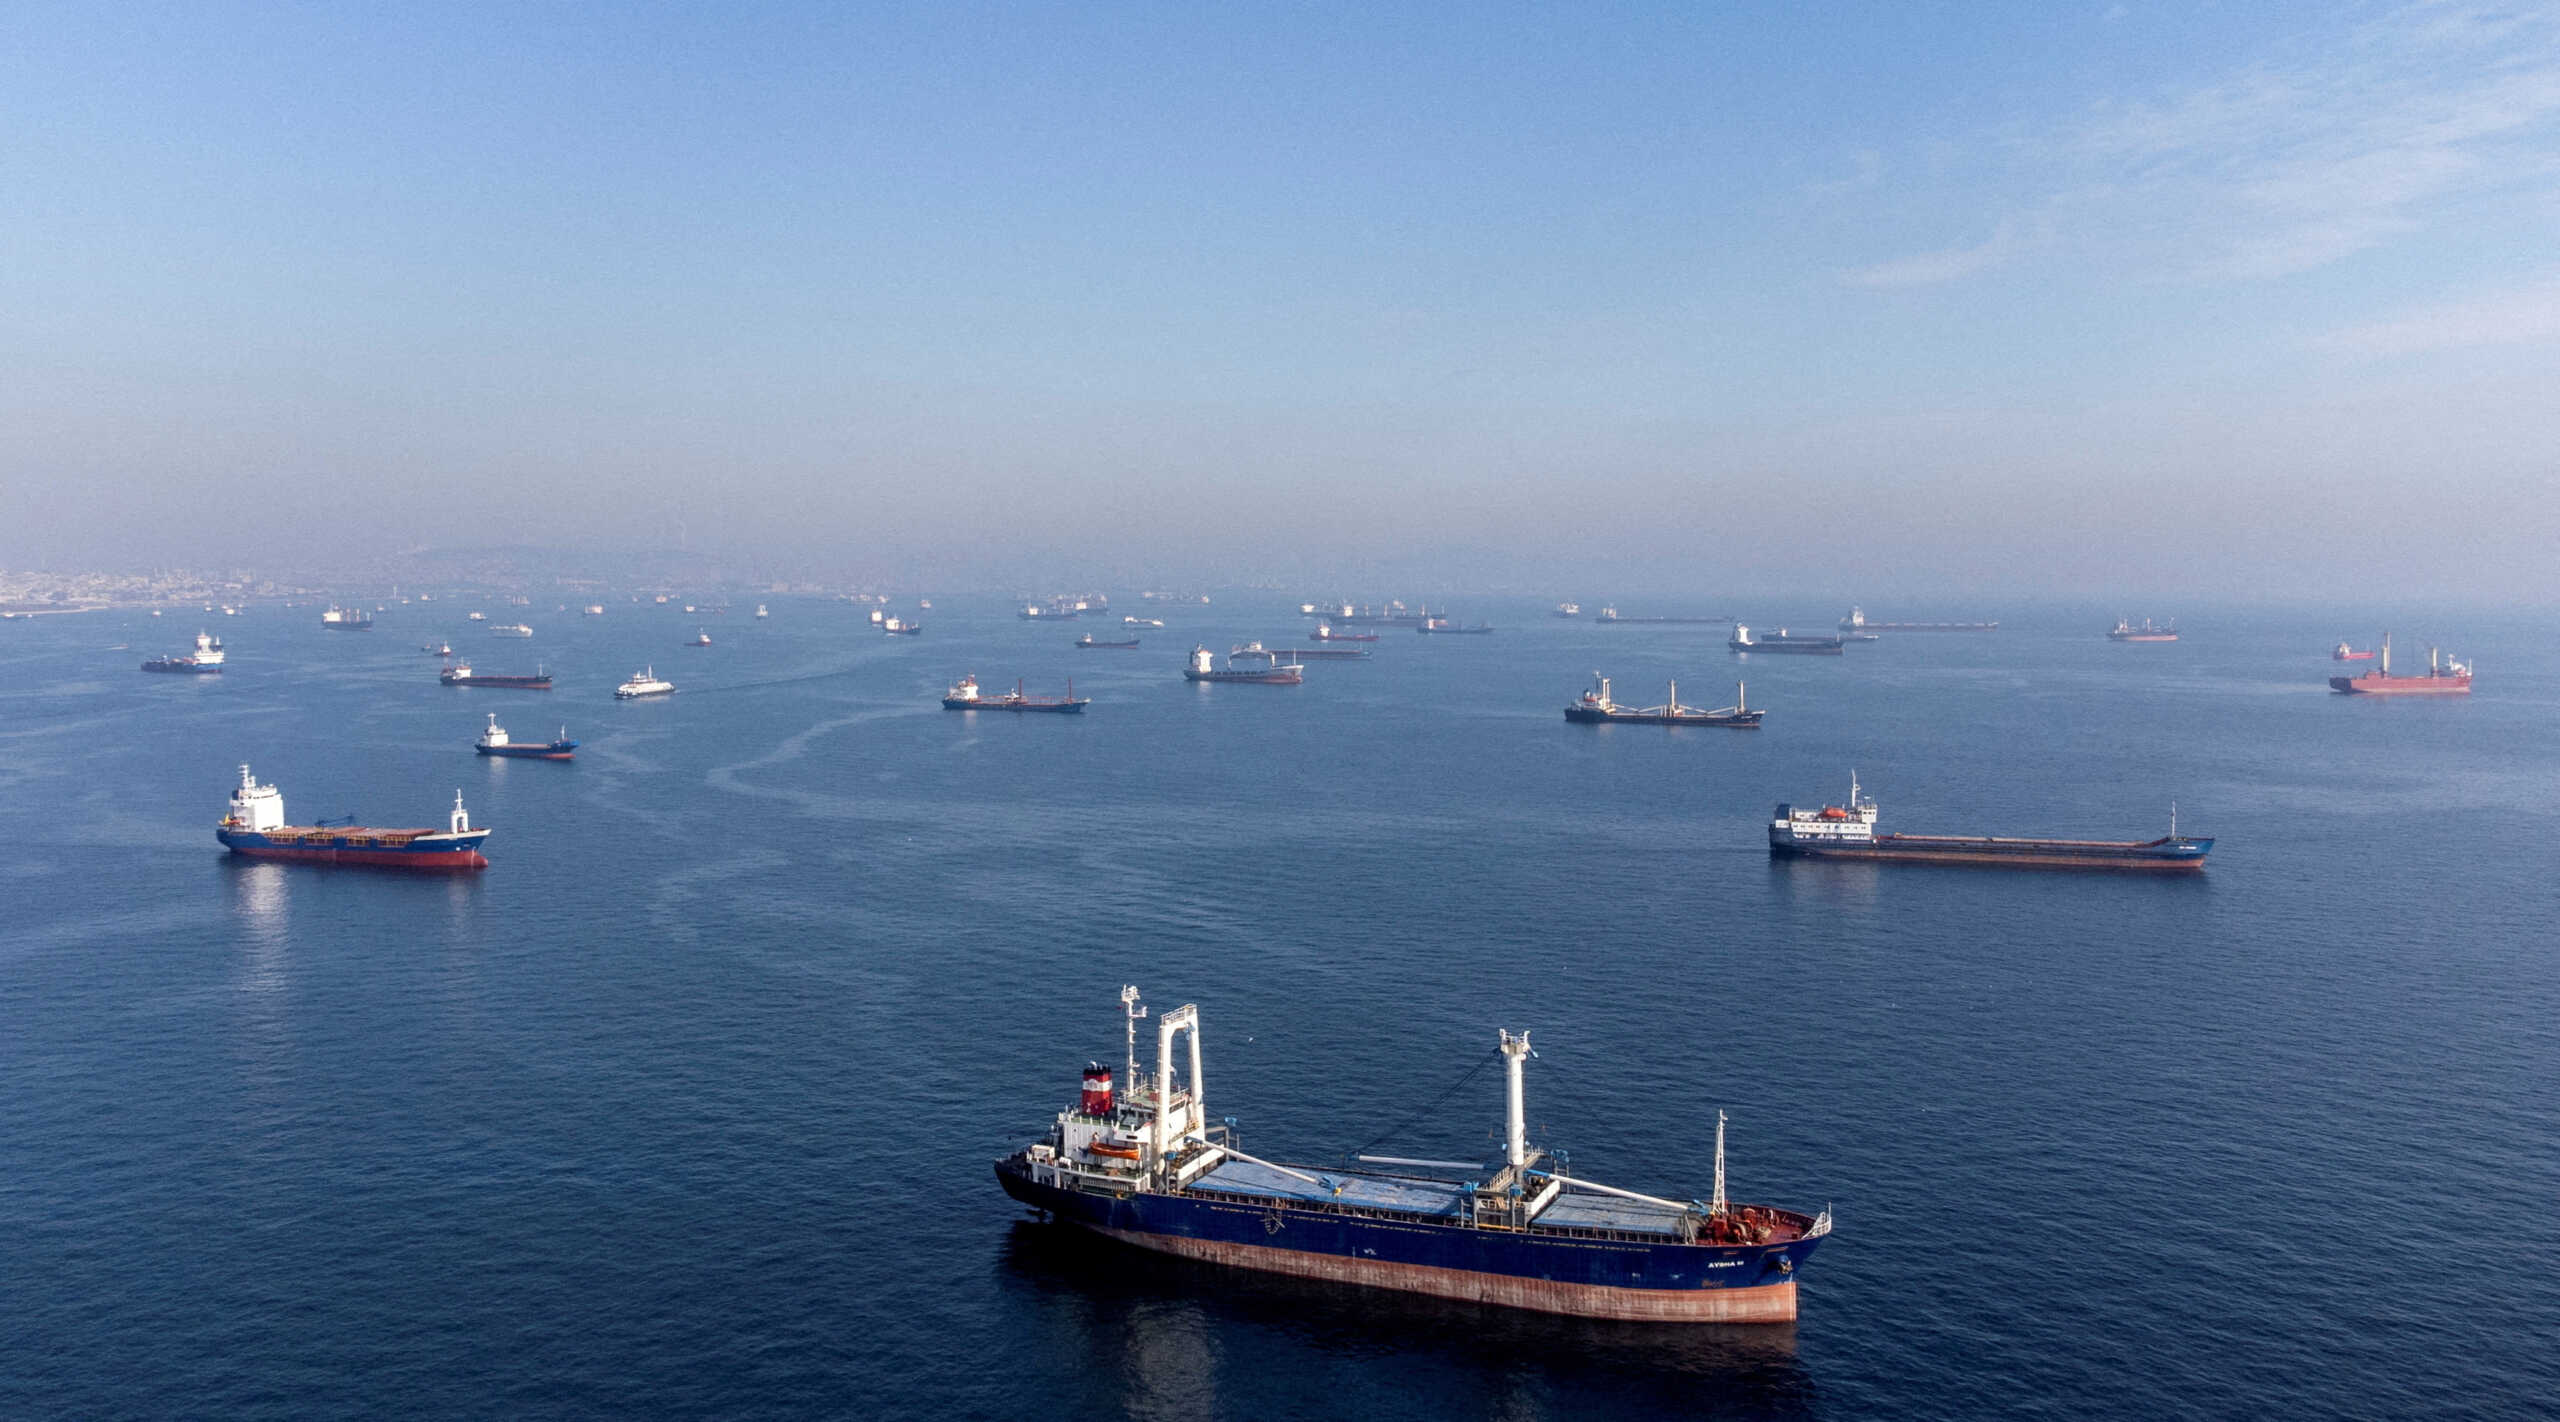 Ξεκίνησαν και πάλι οι επιθεωρήσεις πλοίων στη Μαύρη Θάλασσα βάσει της συμφωνίας Ρωσίας και Ουκρανίας για την εξαγωγή σιτηρών